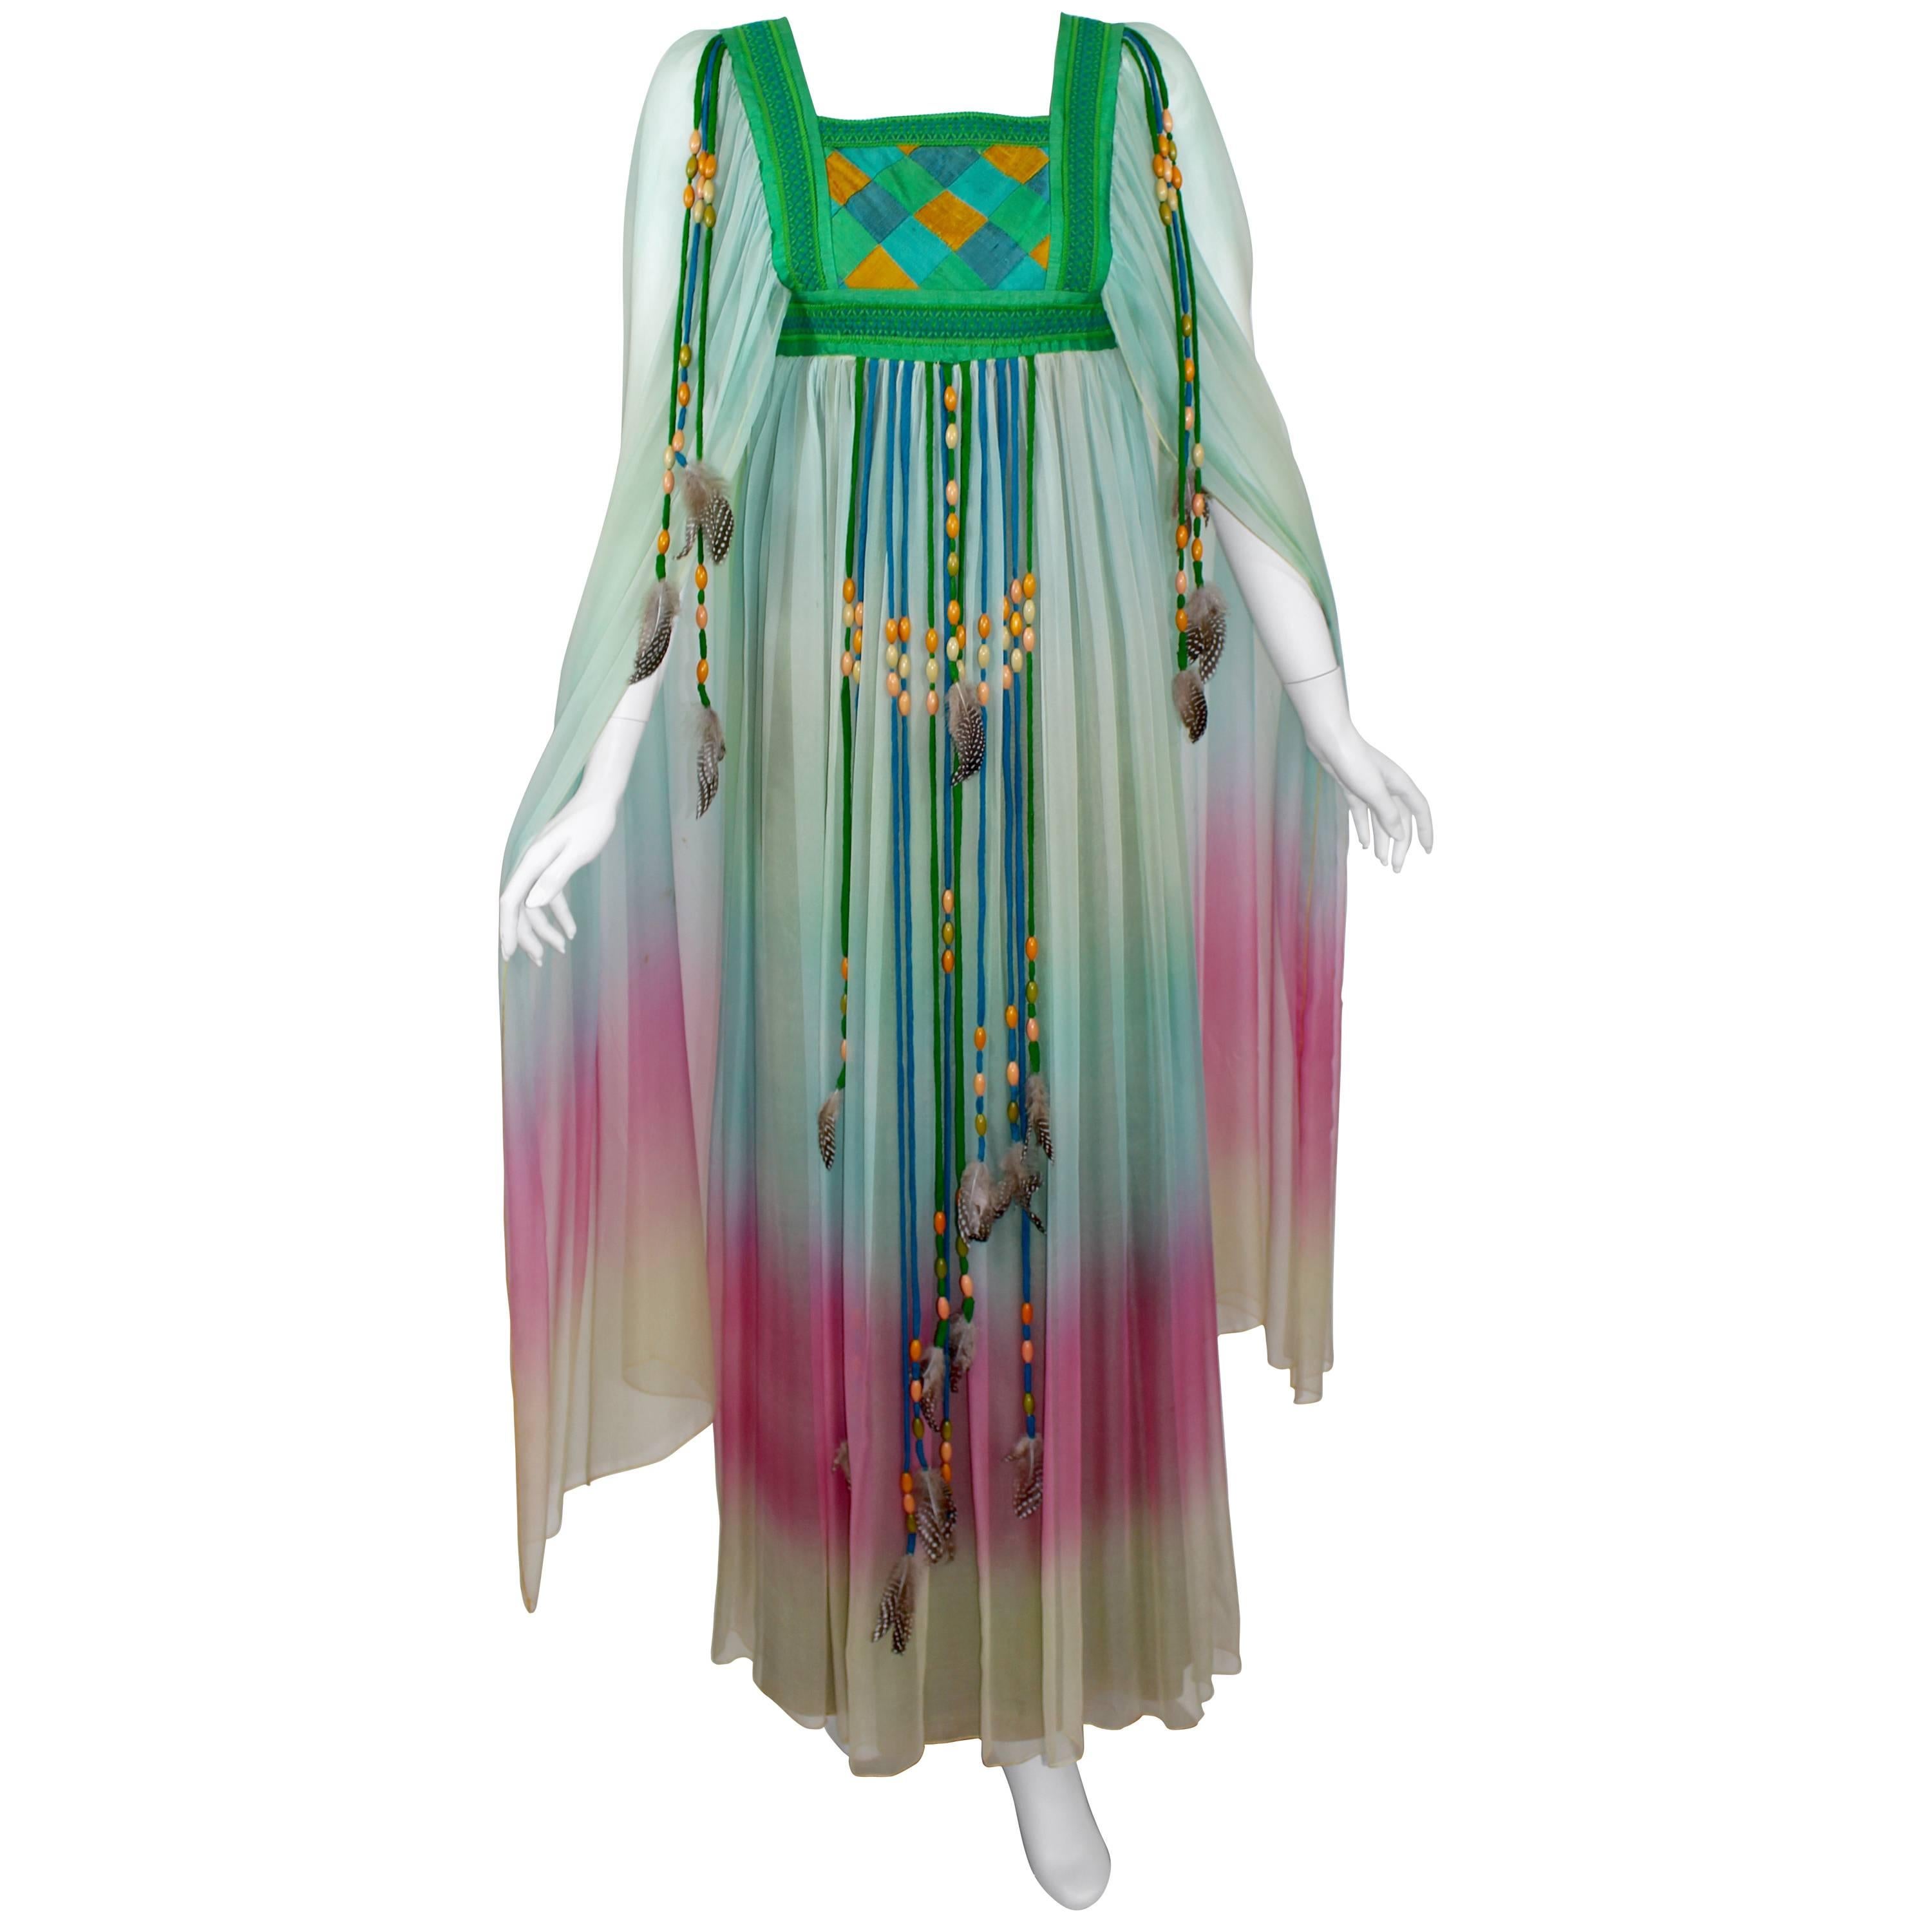 Robe de mariée en mousseline de soie dégradée Gina Fratini Elizabeth Taylor documentée 1975